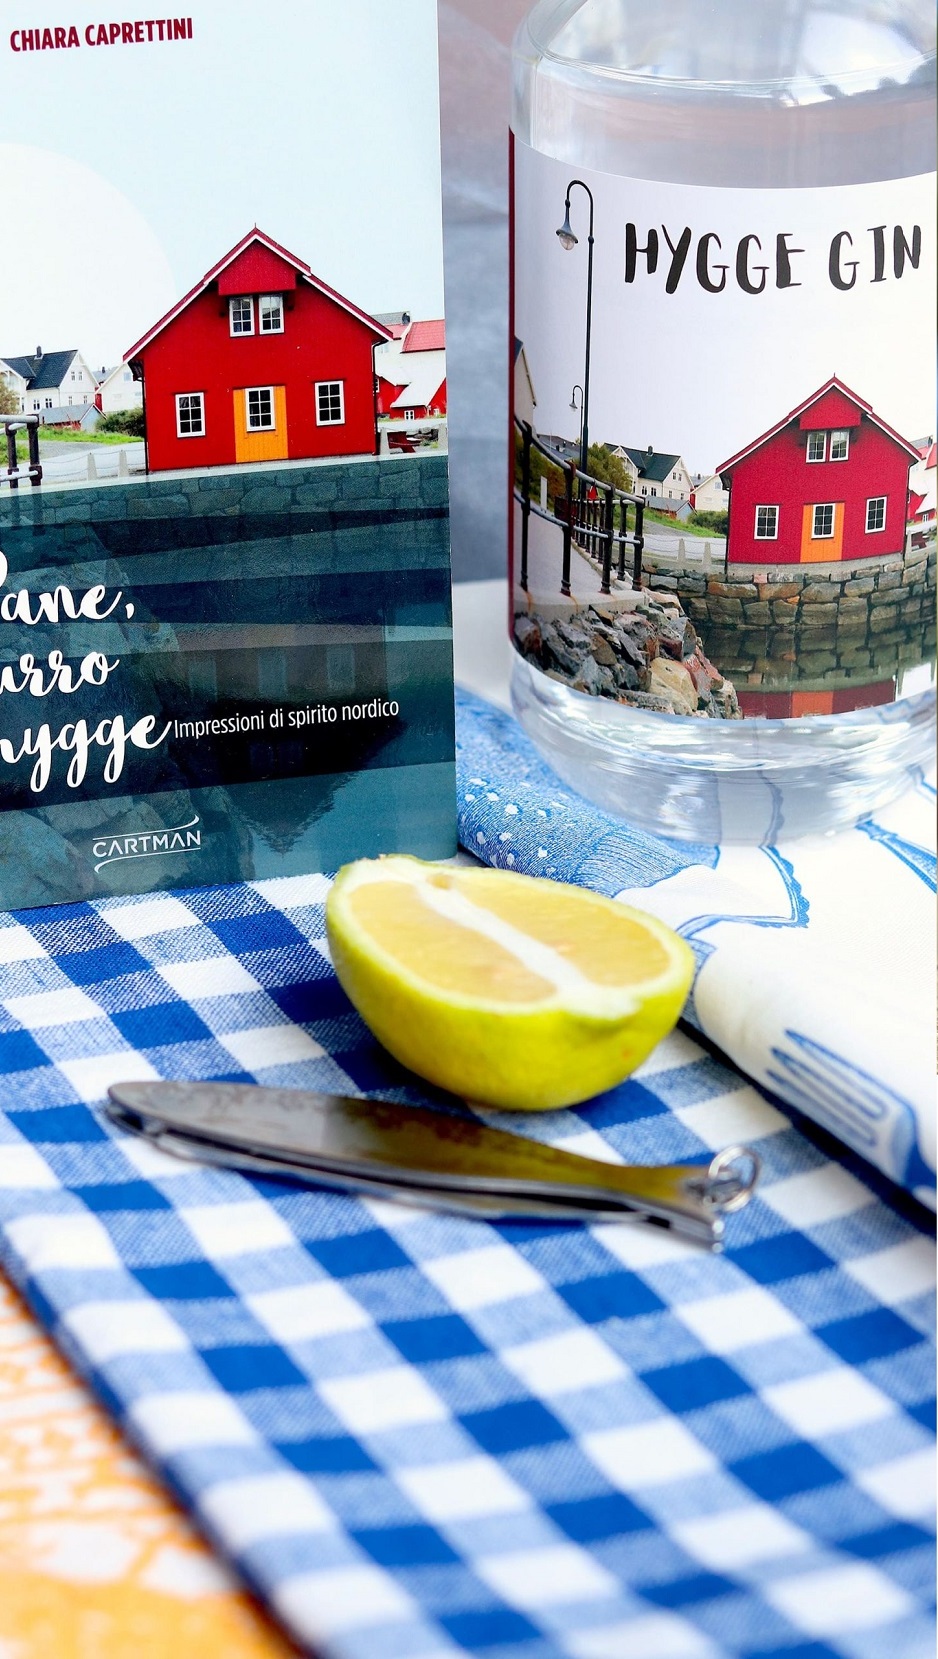 NORDFOODOVESTEST - Progetto di foodpairing in occasione del lancio del nuovo libro, creazione di una ricetta ad hoc da abbinare con ricette tipiche della cultura scandinava.